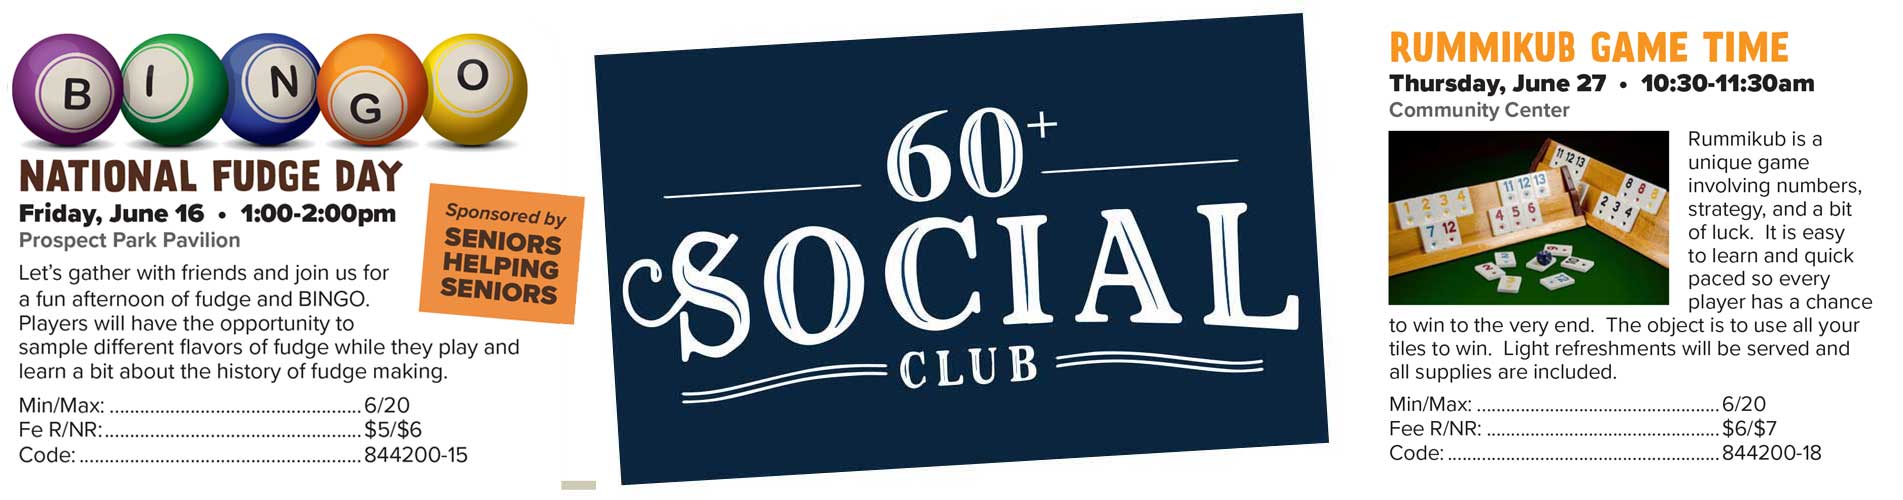 60+ Social Club